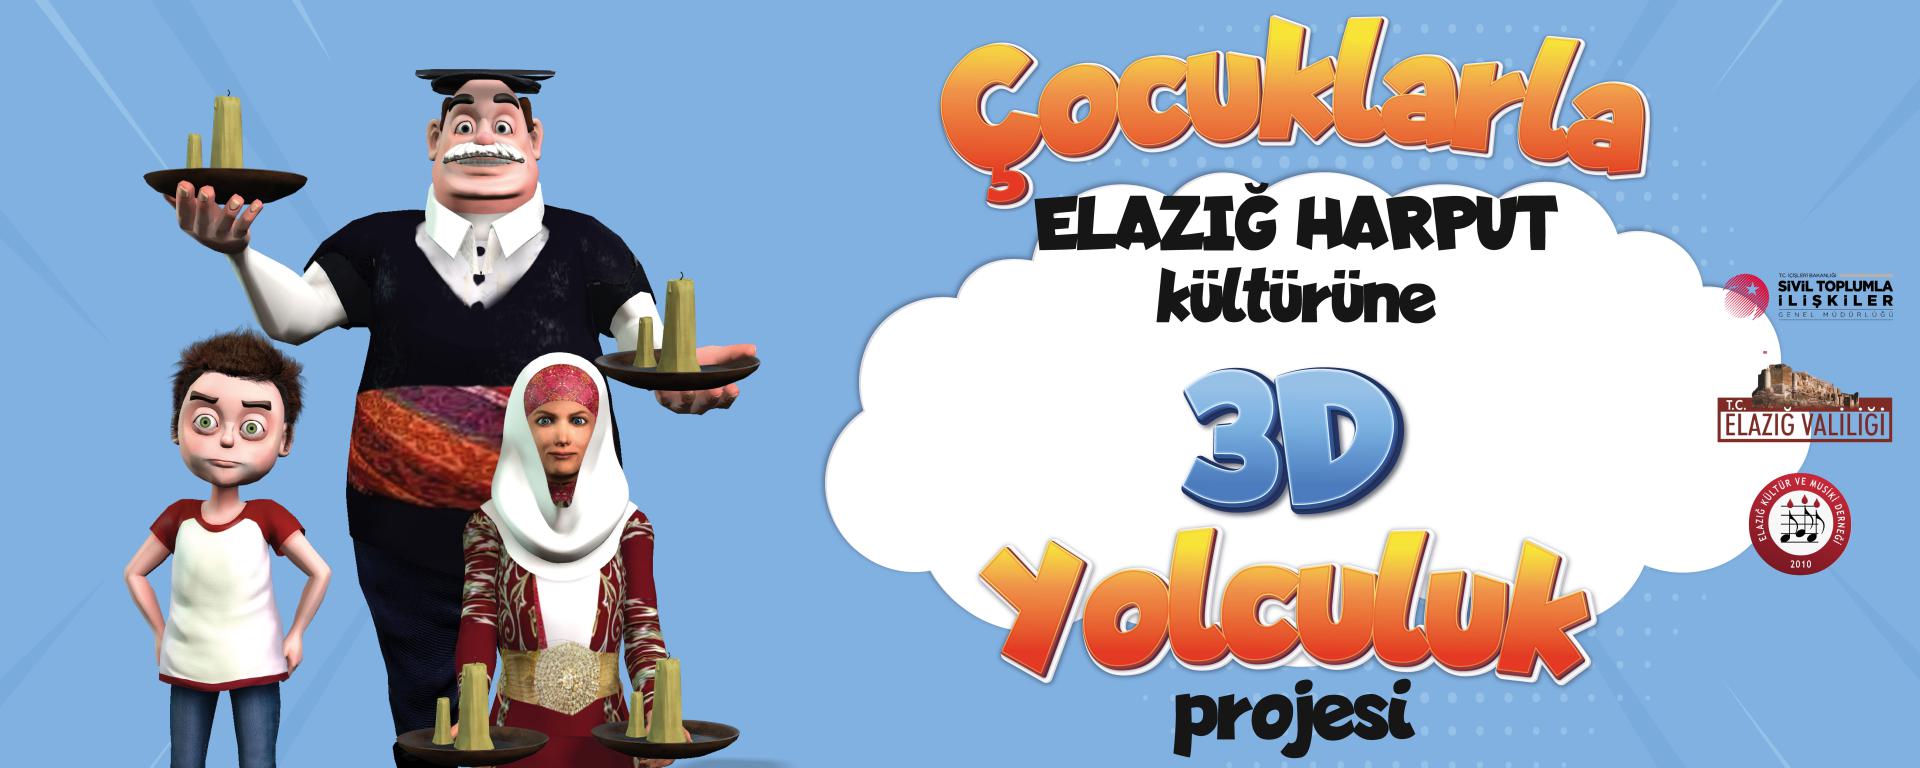 Çocuklarla Elazığ Harput Kültürüne 3D Yolculuk Projesi -2022 